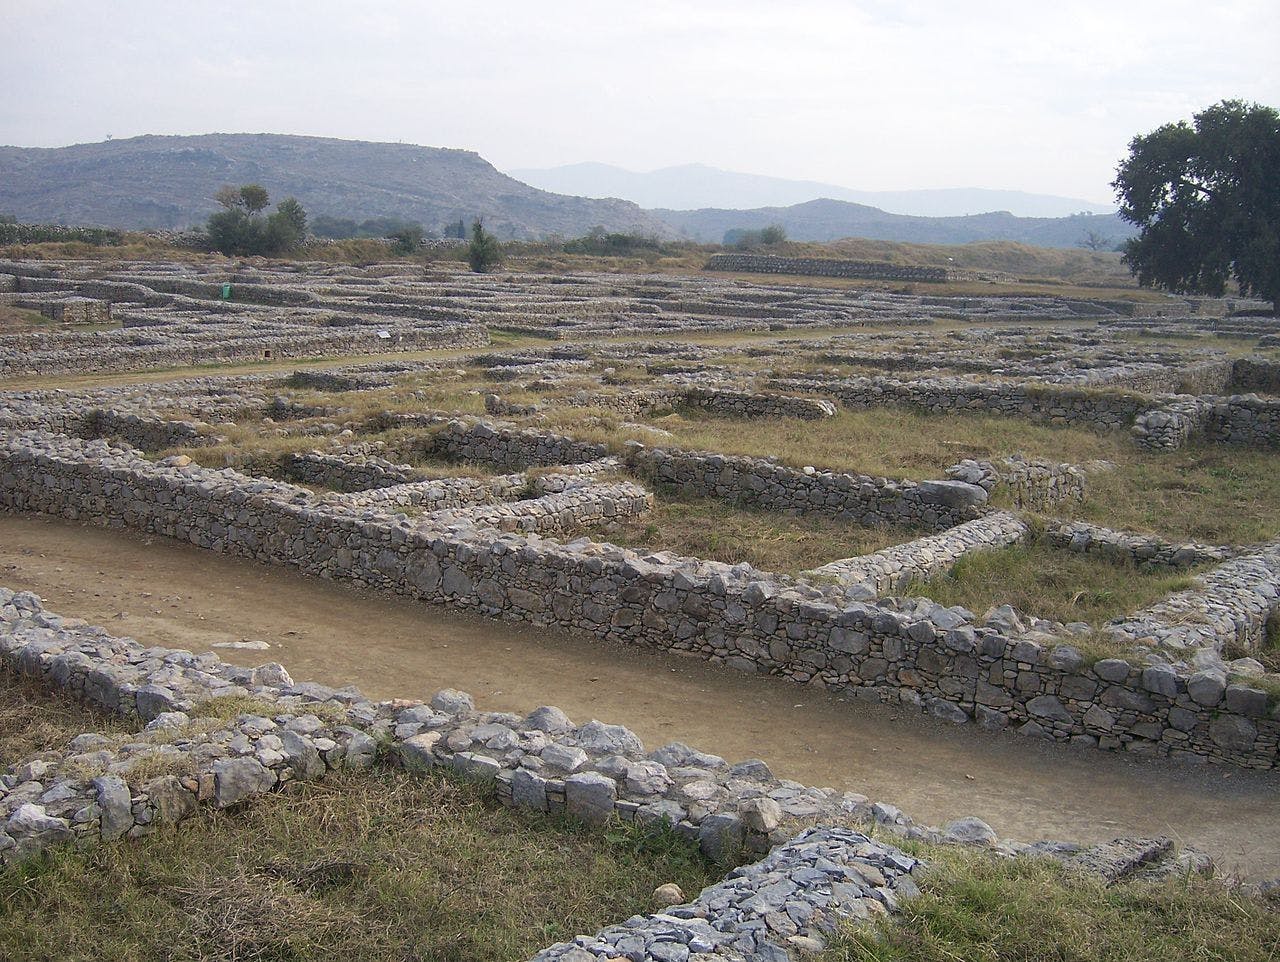 Remains of Sirkap